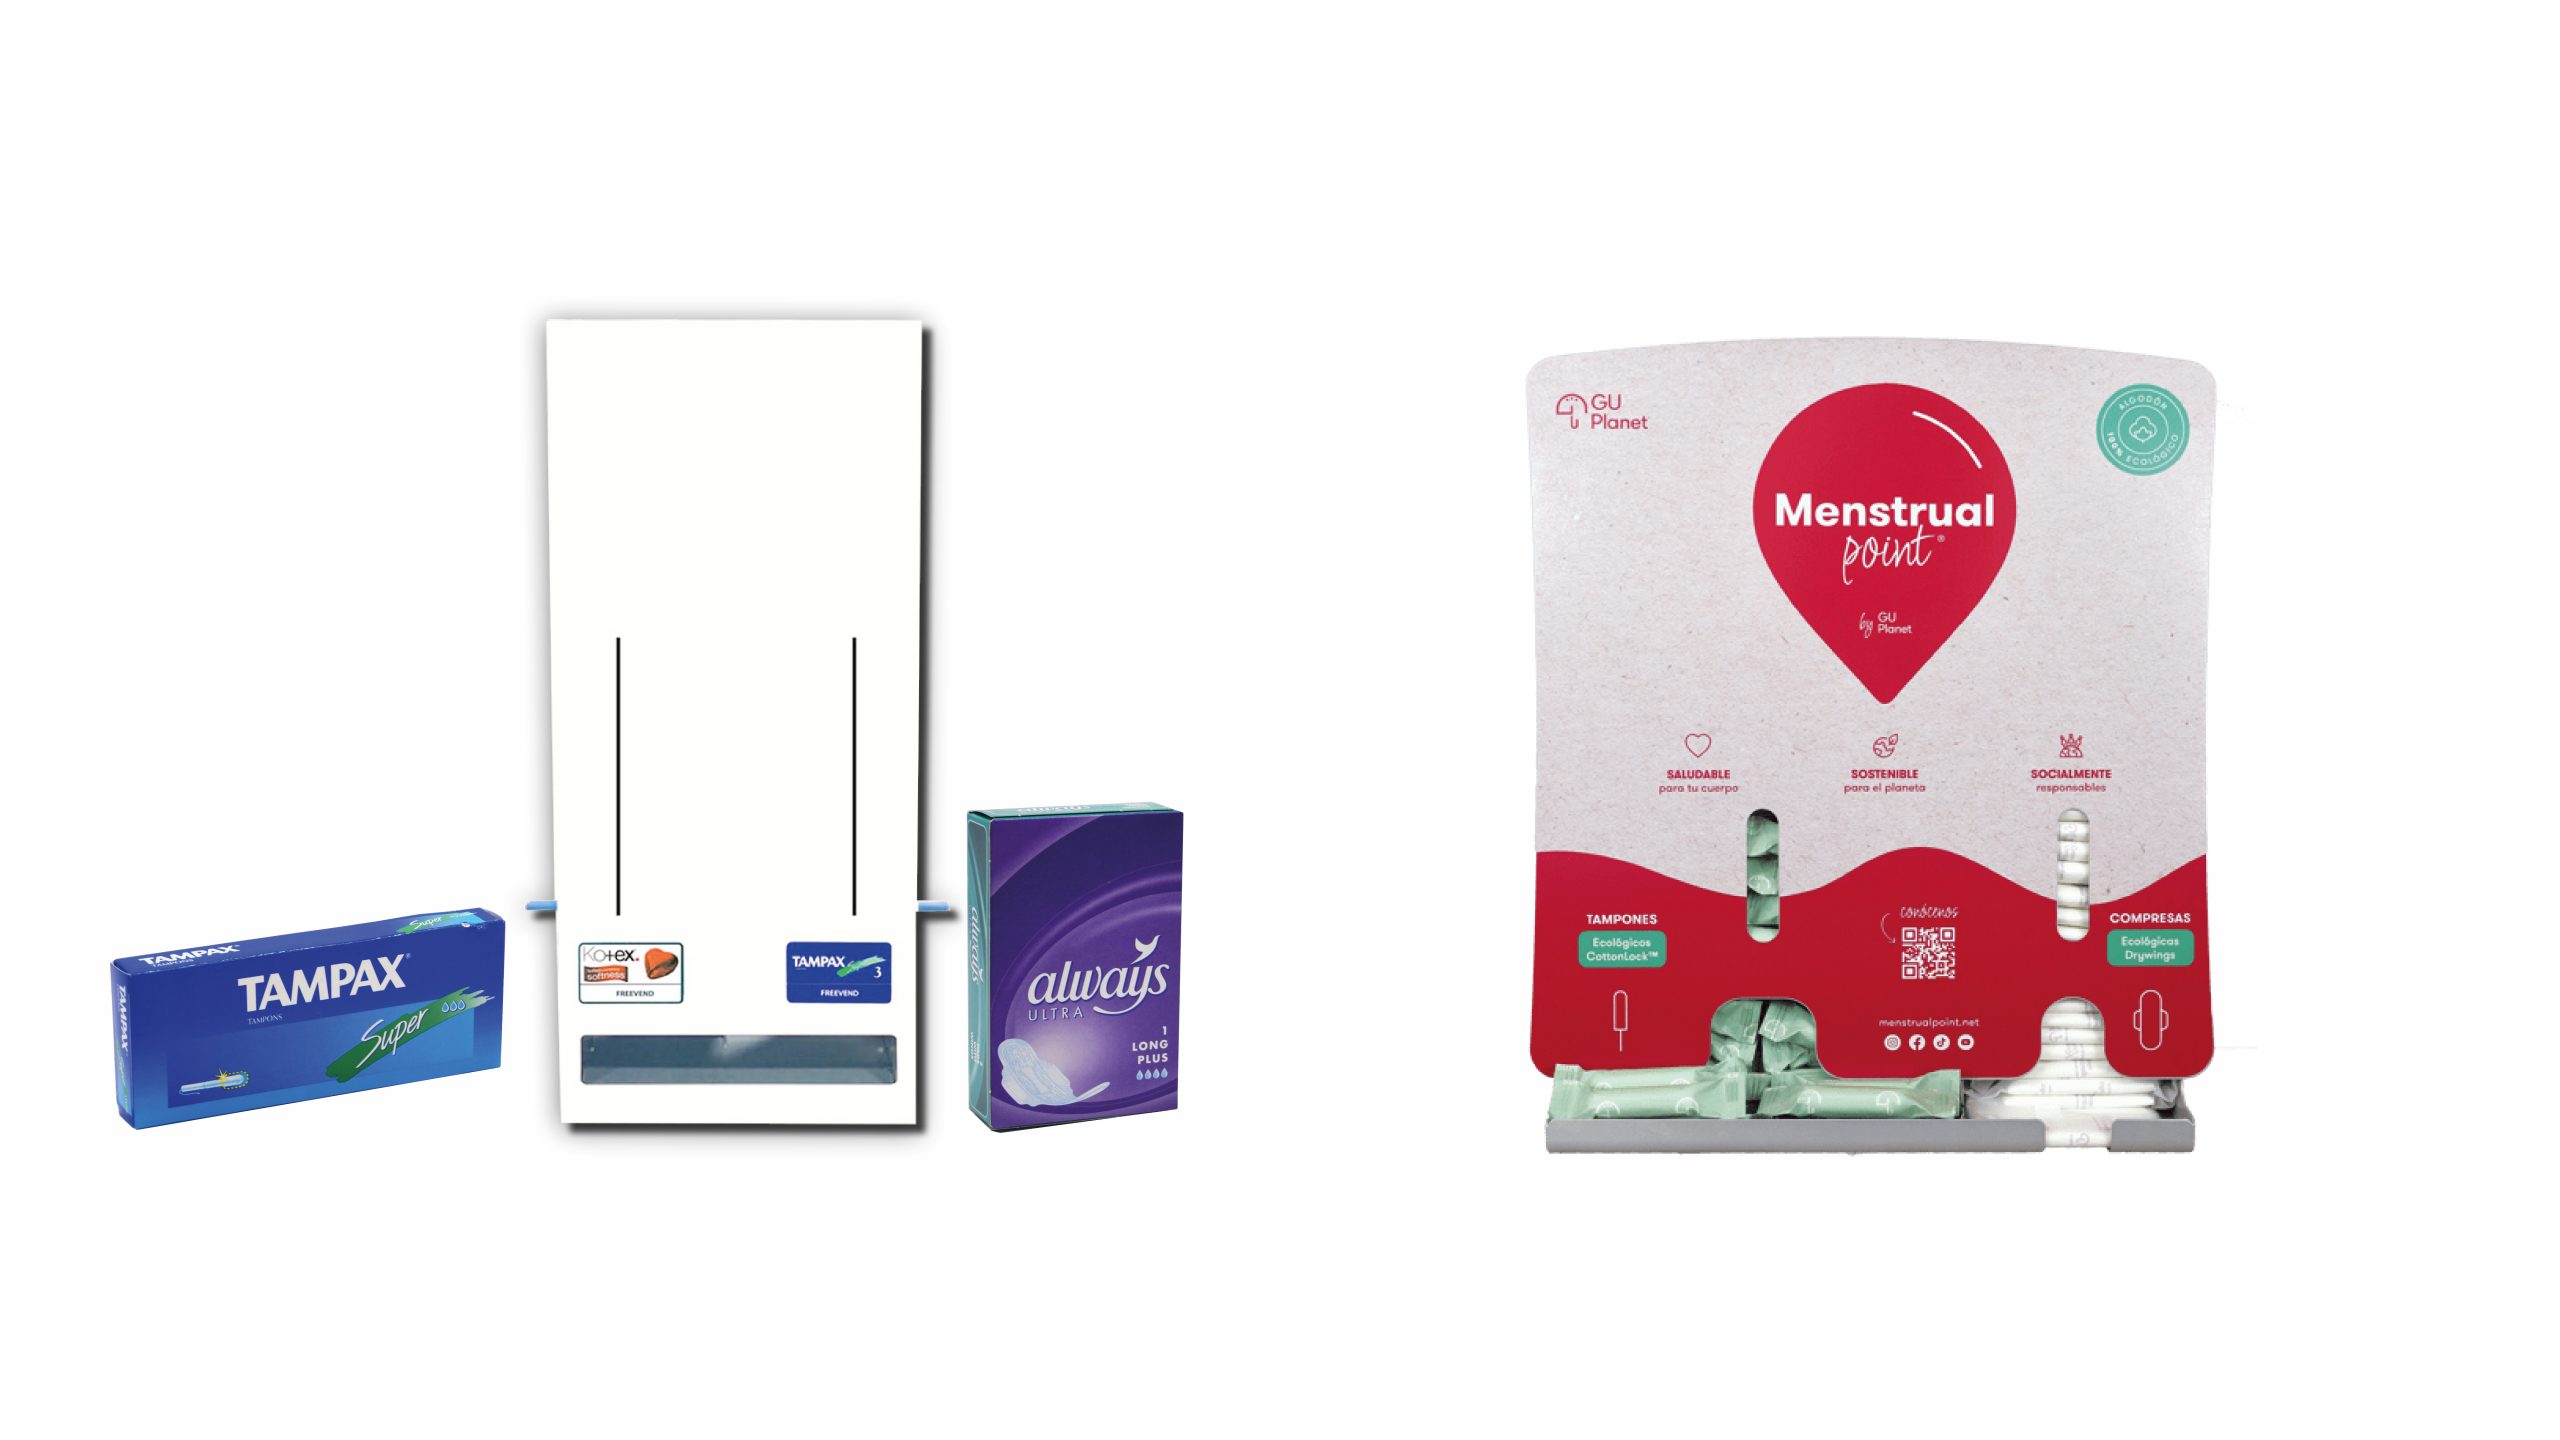 papelmatic-higiene-profesional-productos-higiene-menstrual-dispensador-dos-lineas